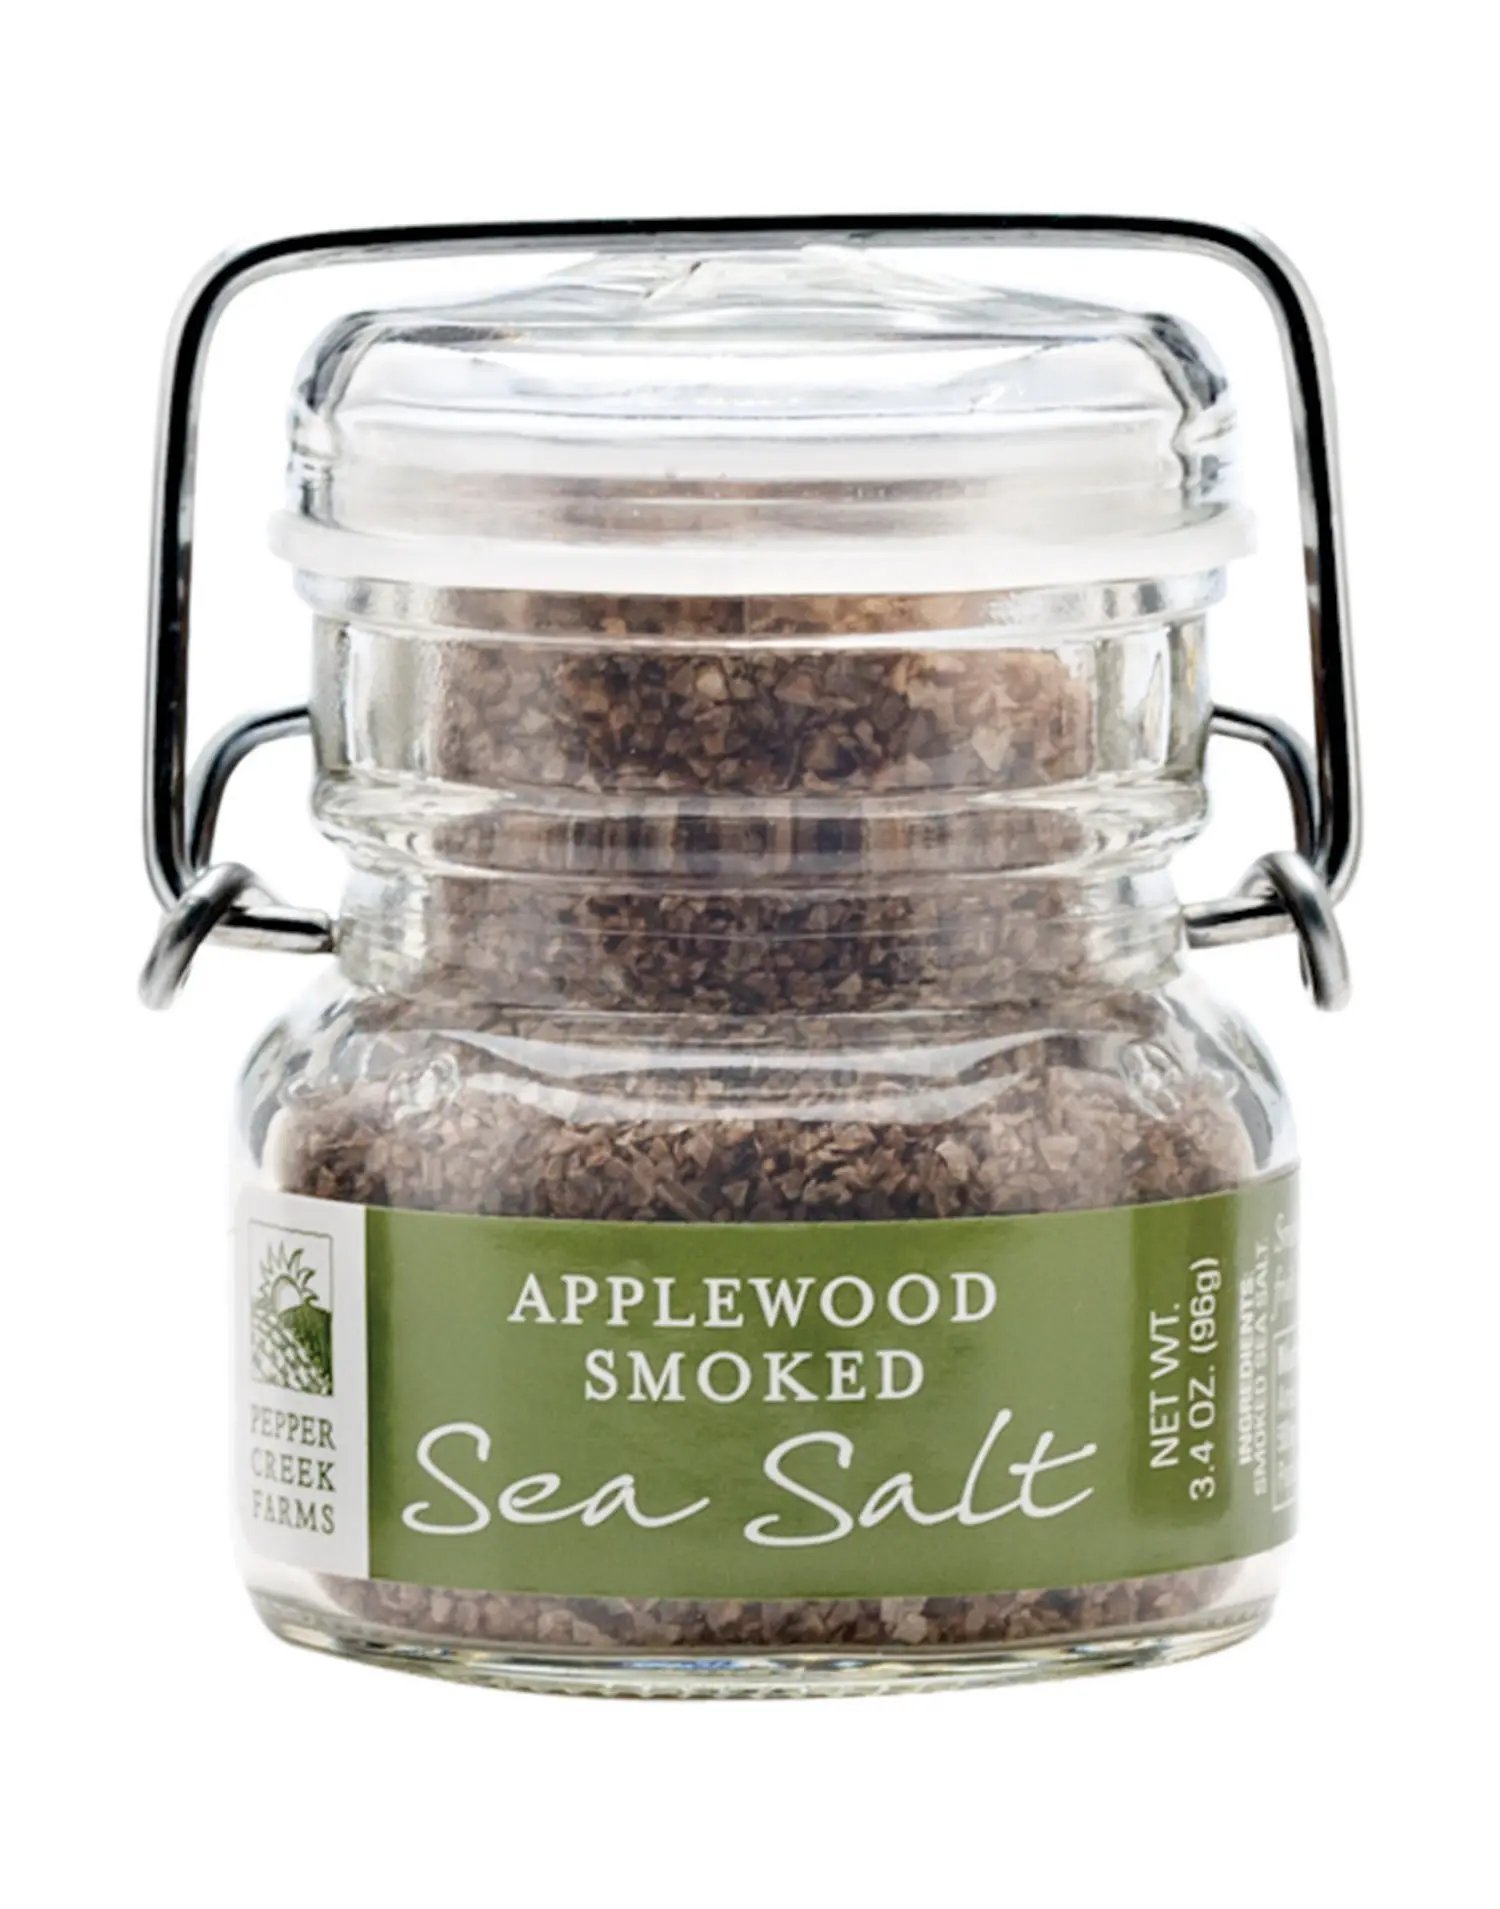 applewood smoked salt - What is Applewood sea salt